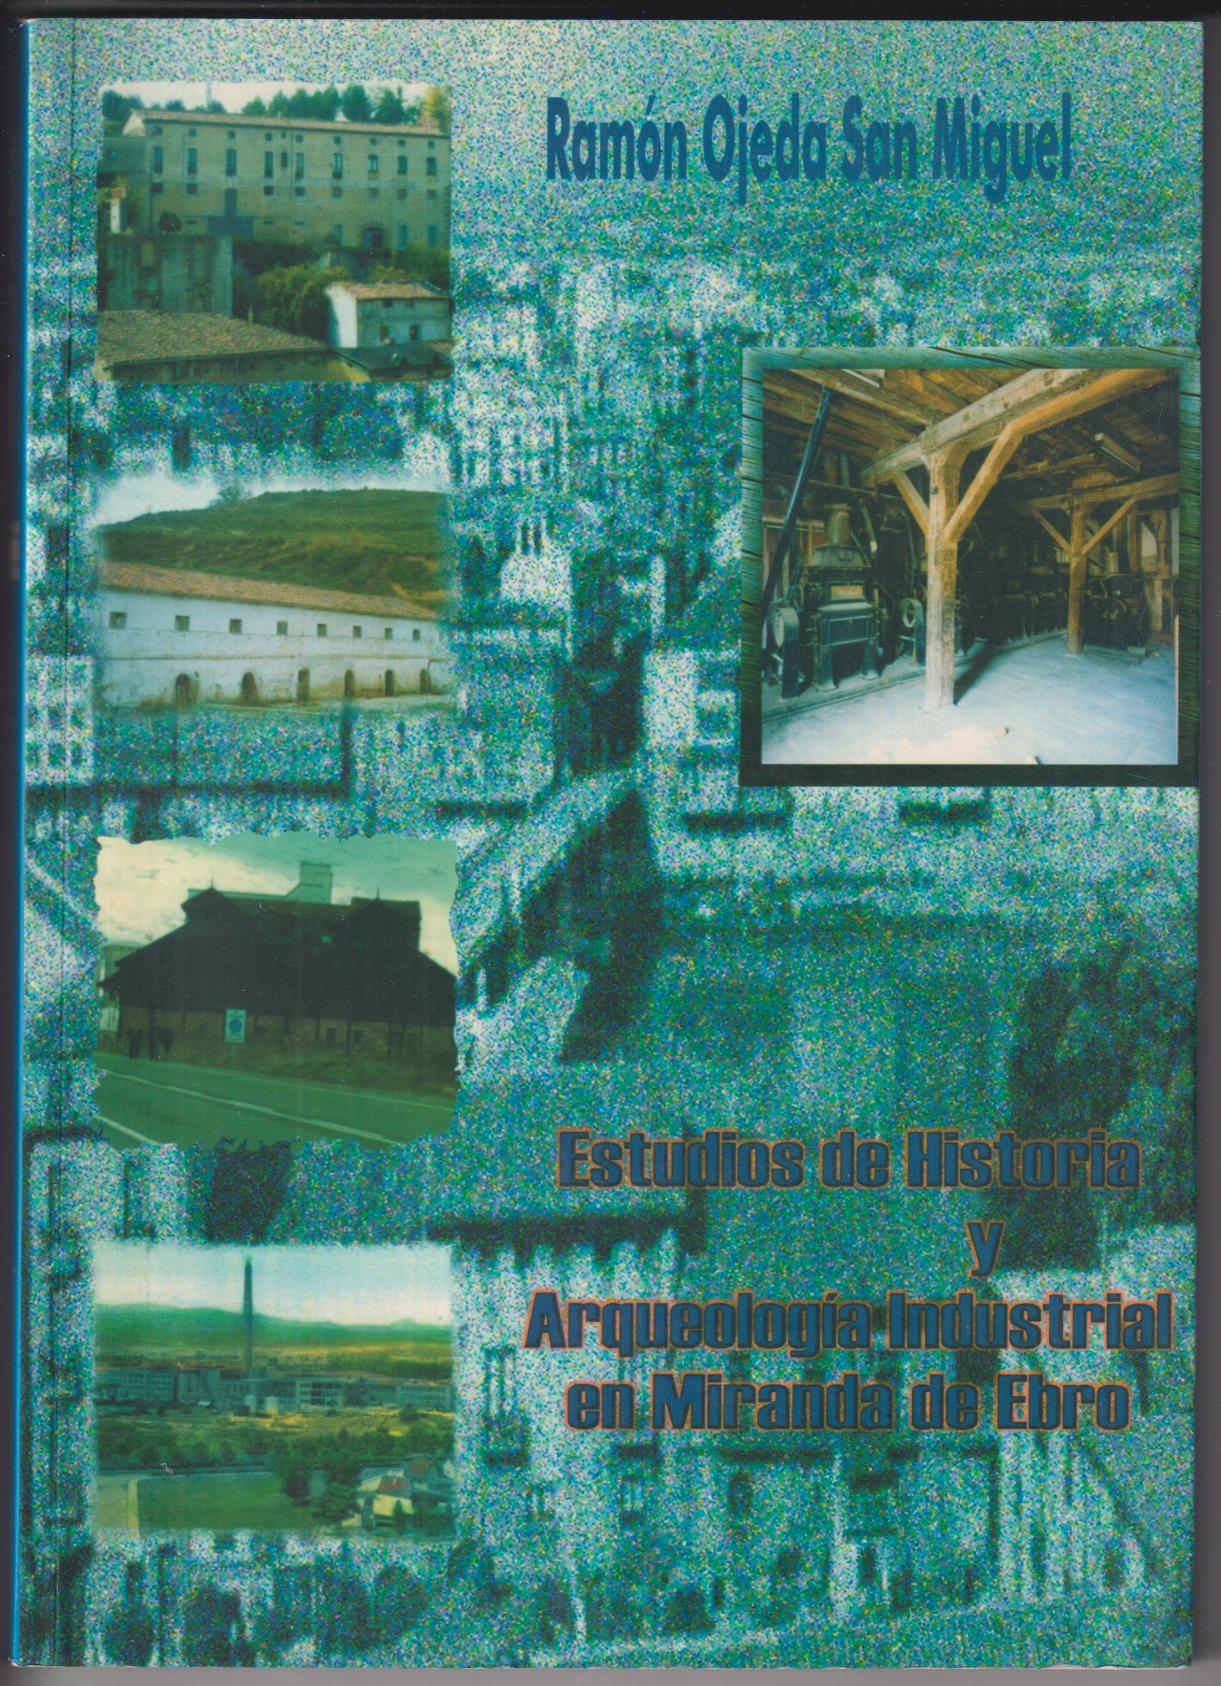 Estudios de Historia y arqueología industrial en miranda de Ebro. R. Ojeda San miguel. sin usar